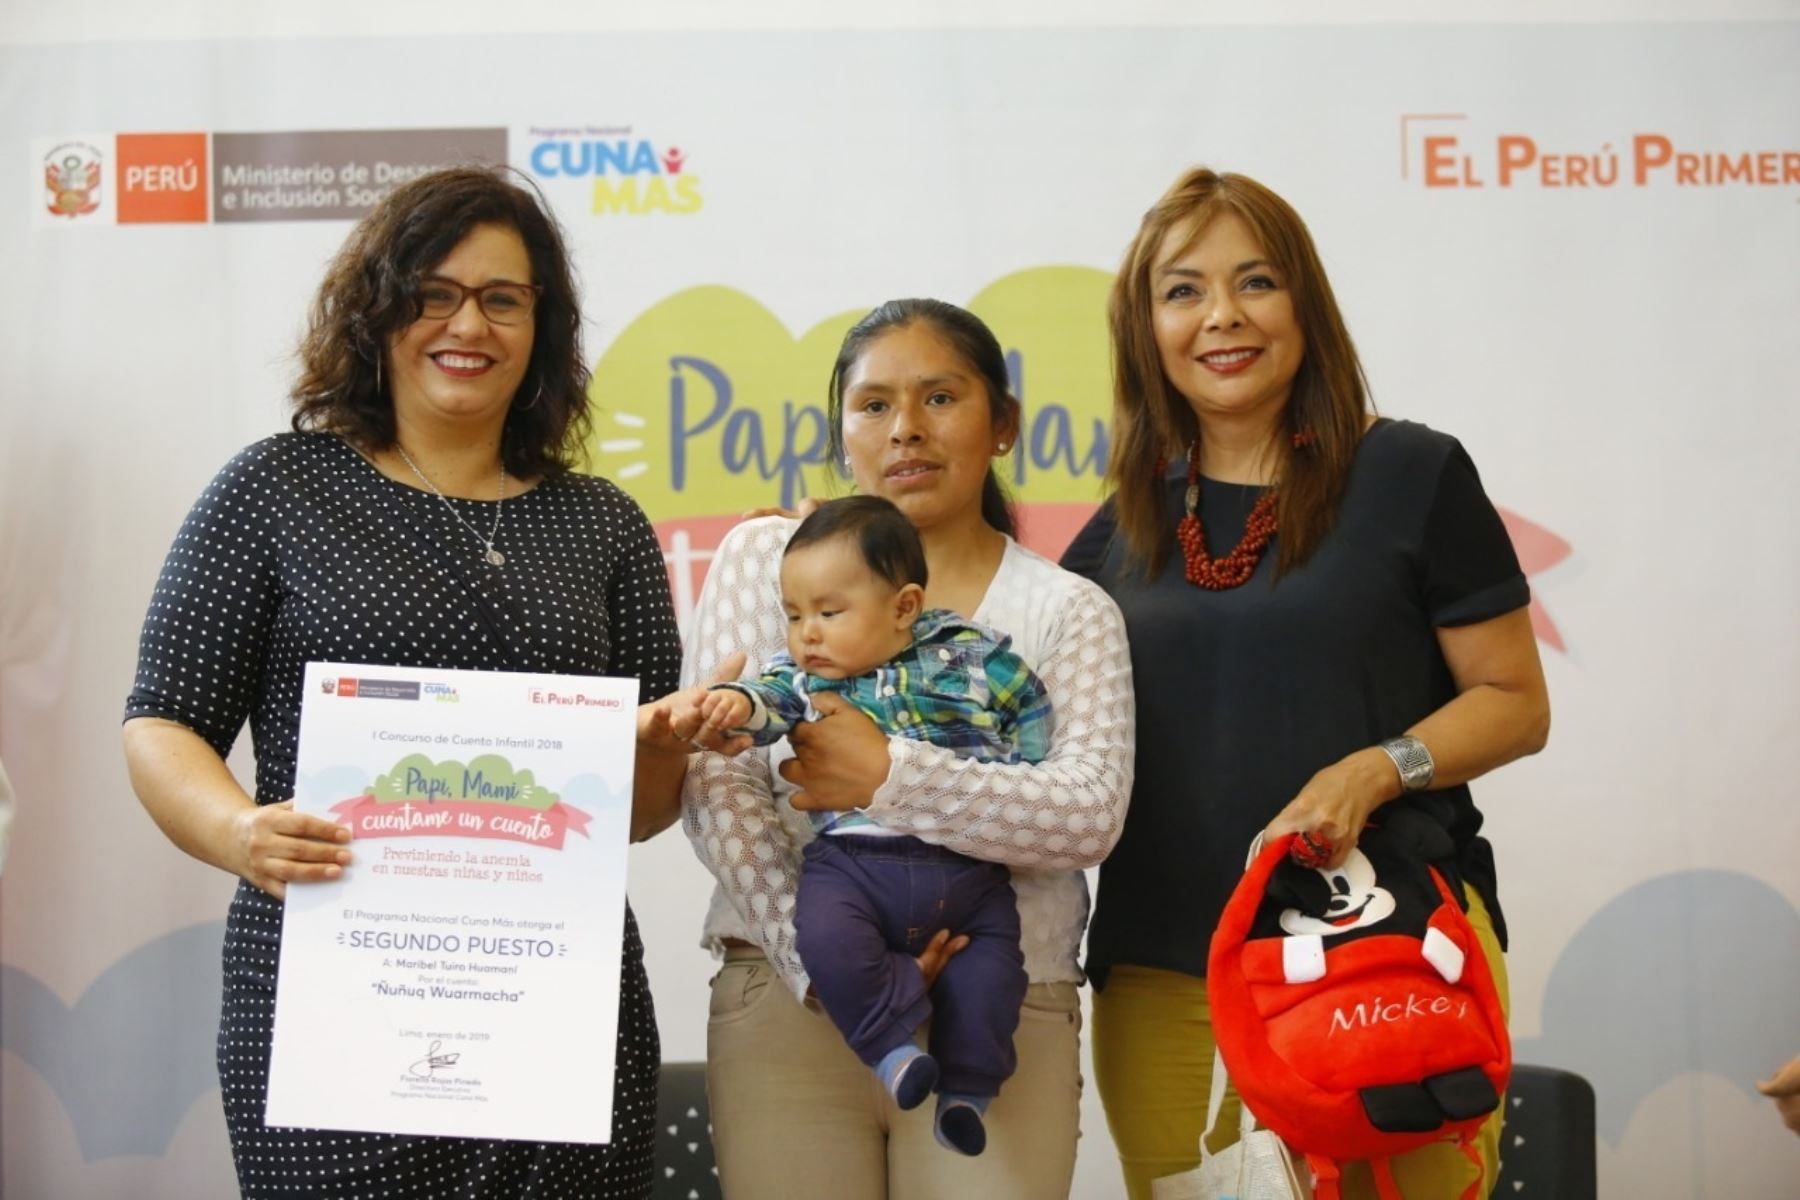 Primera Dama, Maribel Díaz Cabello, participa en premiación del concurso “Papi, Mami, cuéntame un cuento”, organizado por Cuna Más.